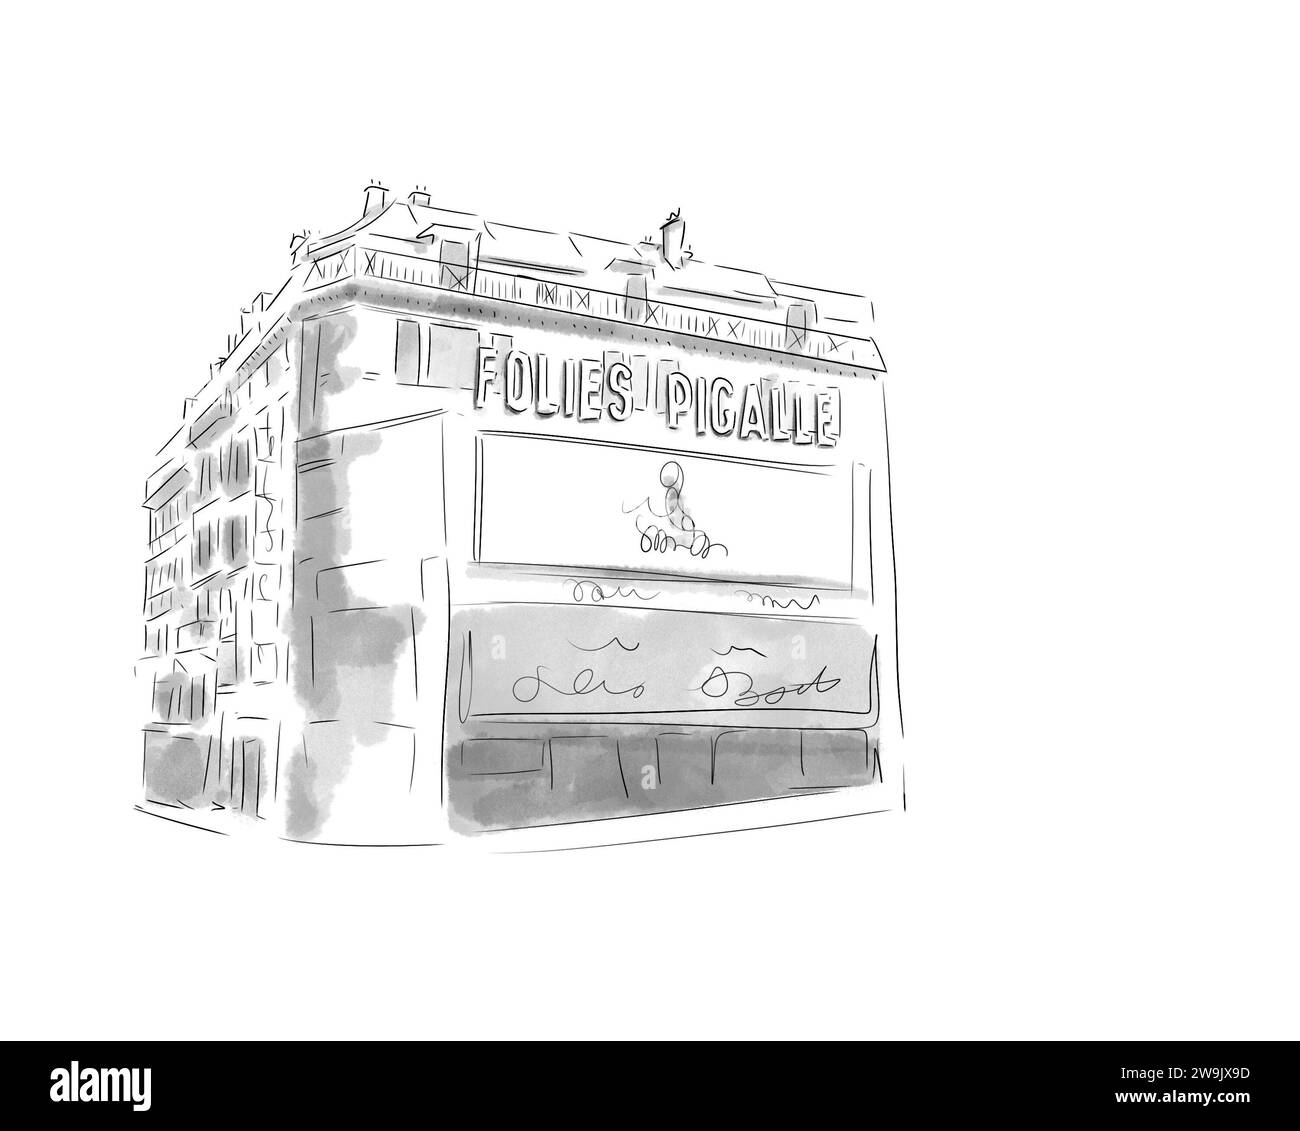 Illustration en noir et blanc de monument de Paris, Folies Pigalle Moulin Rouge Stock Photo